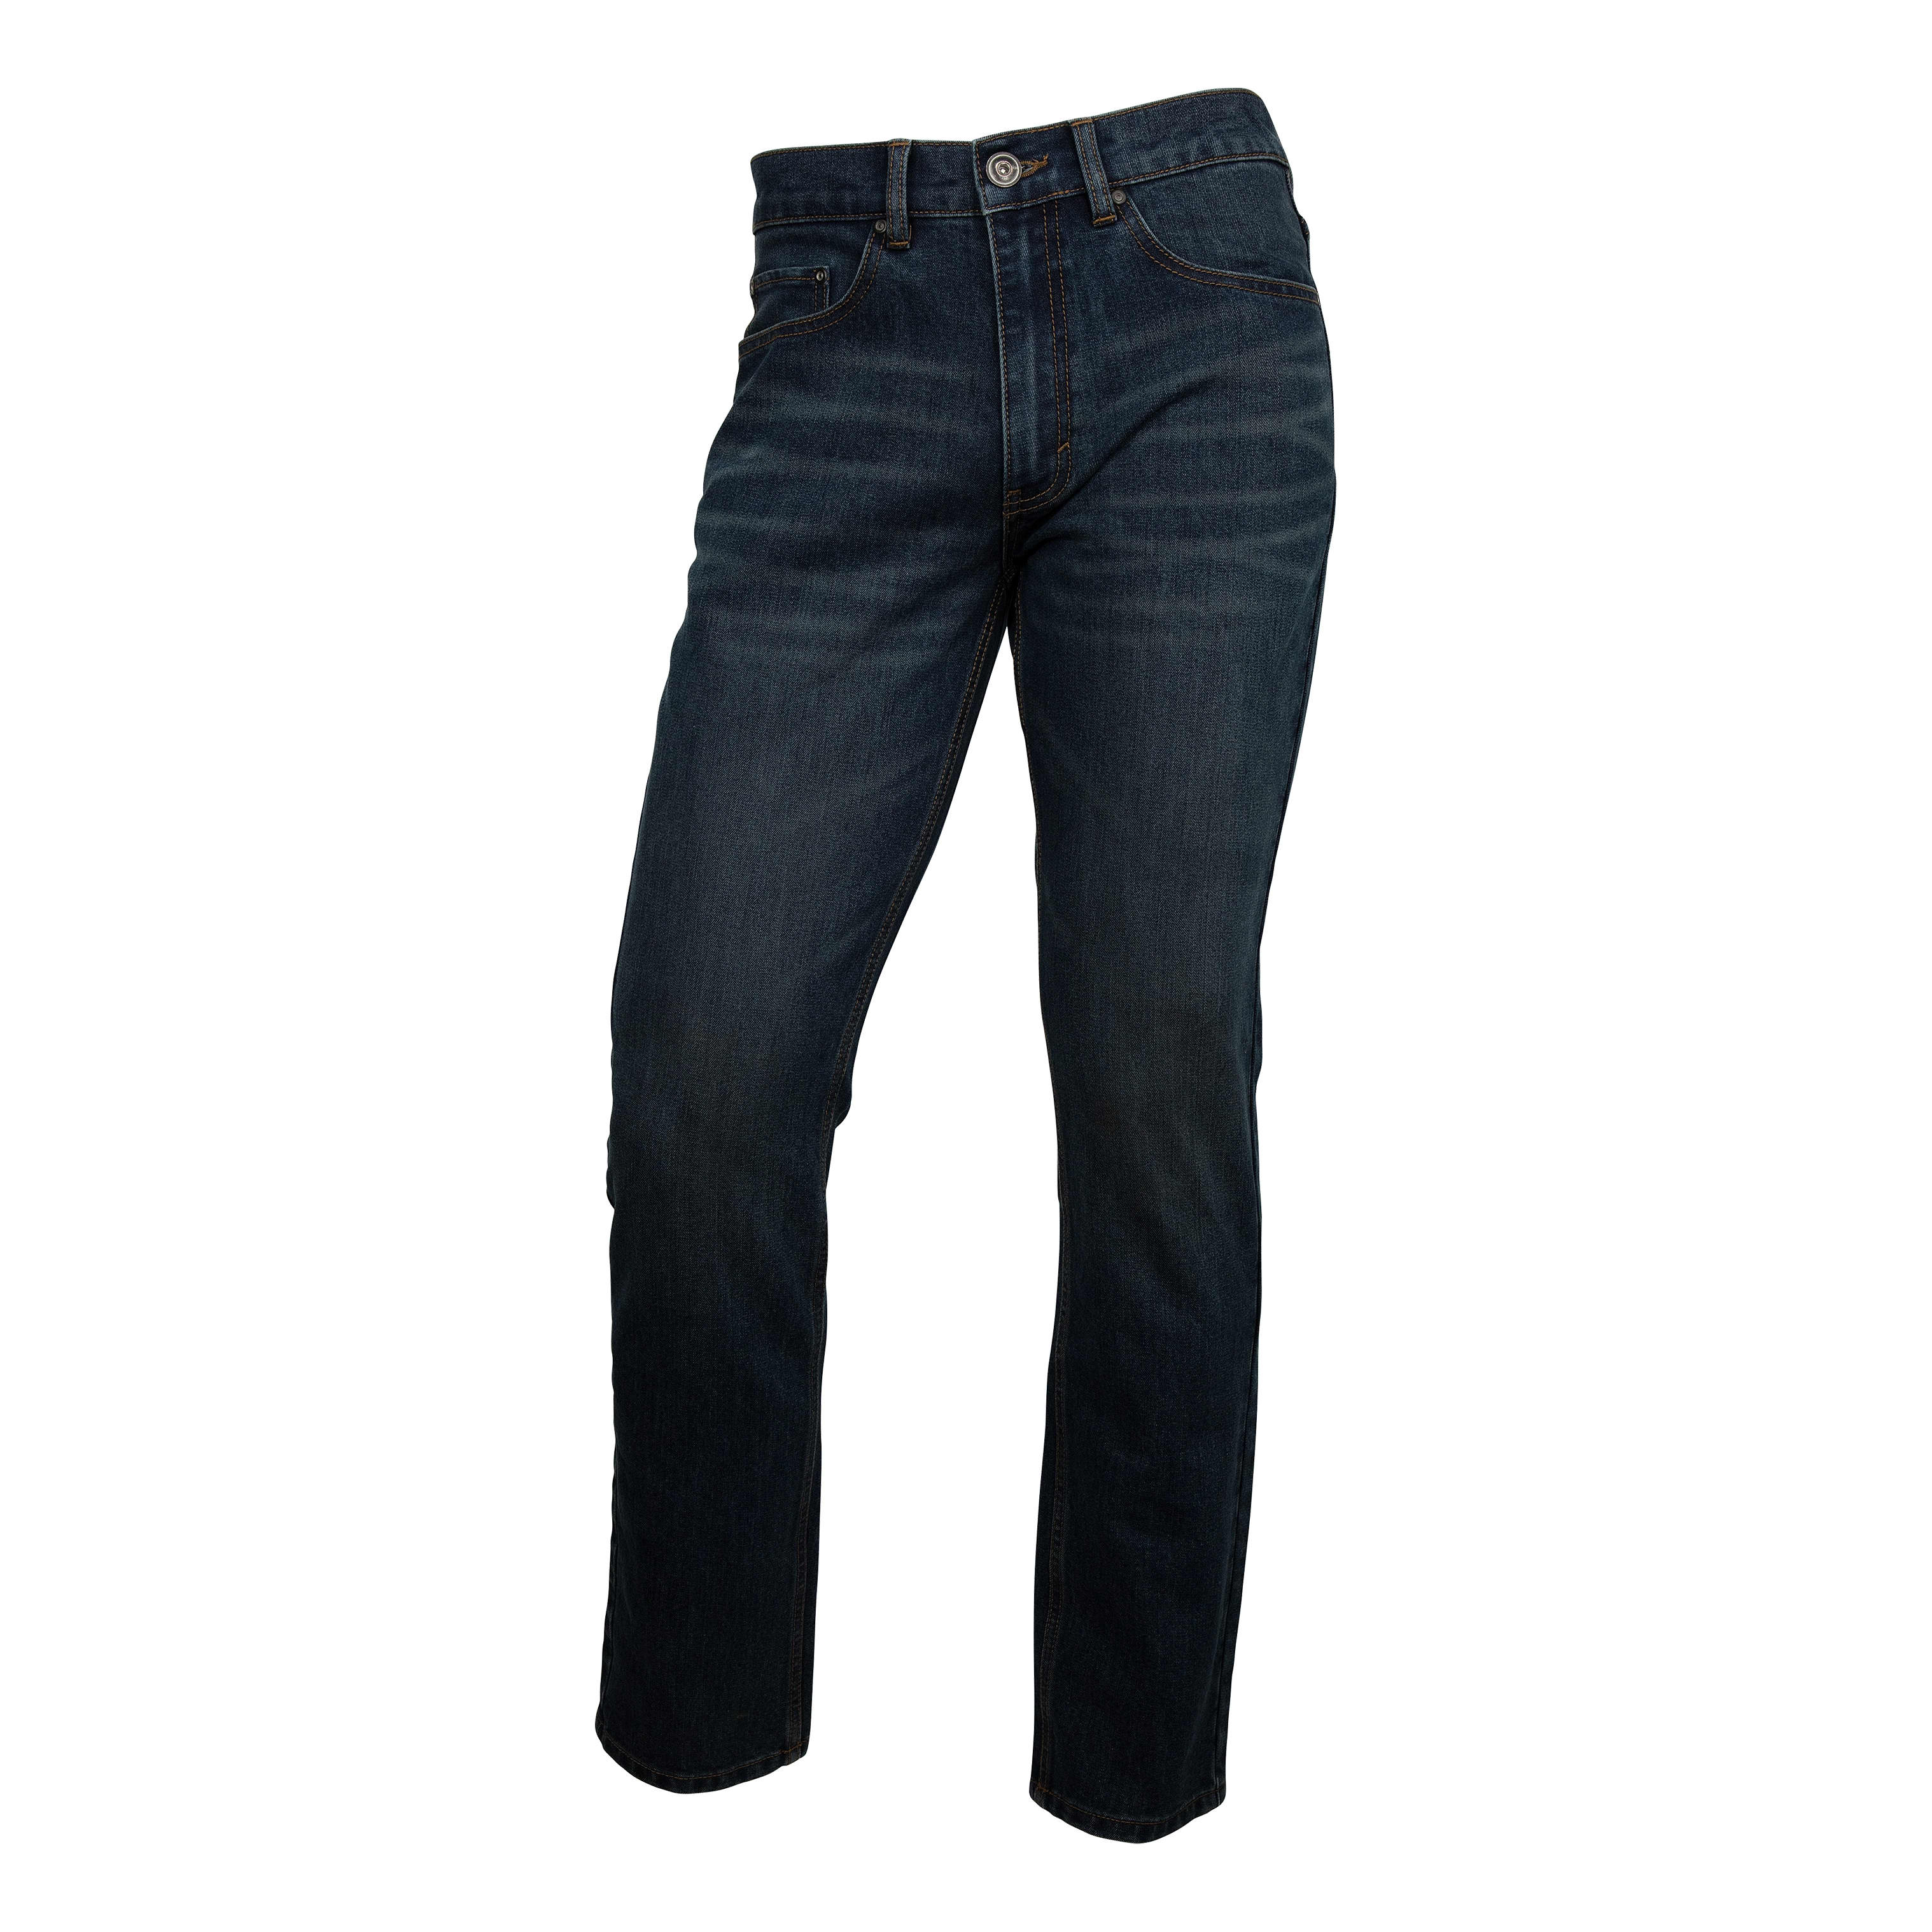 RedHead® Men’s Classic Flex FIT Denim Jeans - El Paso,RedHead® Men’s Classic Flex FIT Denim Jeans - El Paso